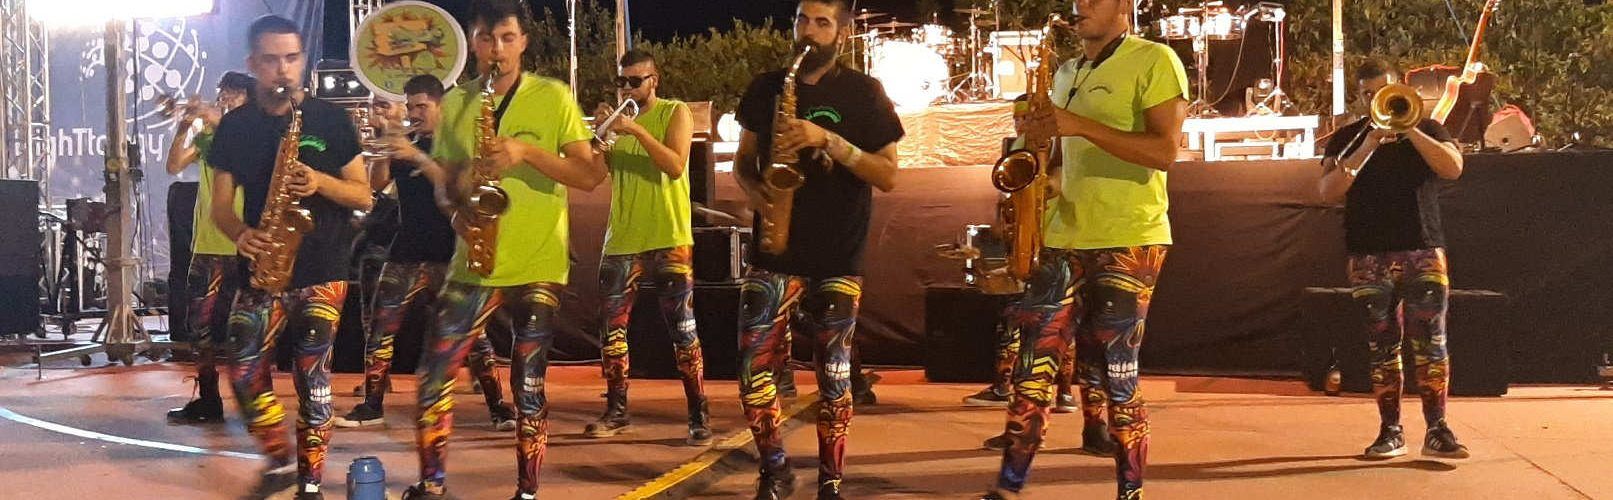 Gran nit de la música a Sant Jordi amb l’exhibició nacional de xarangues i la Fúmiga